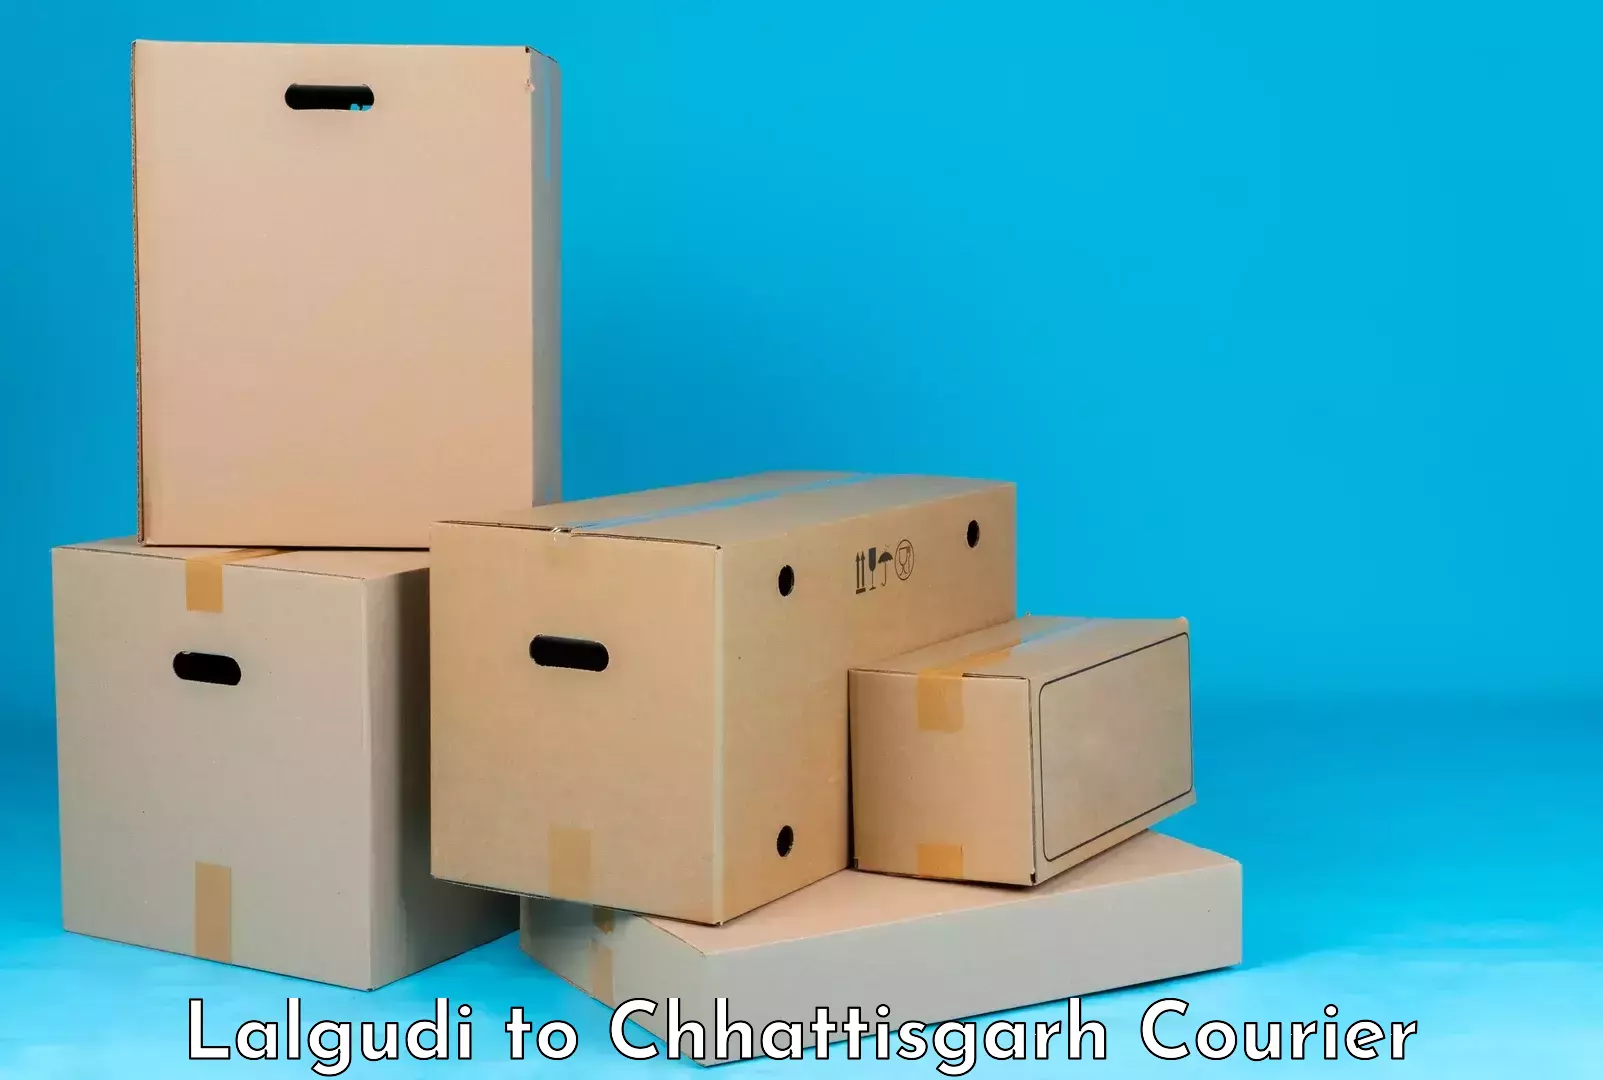 Luggage delivery optimization Lalgudi to Chhattisgarh